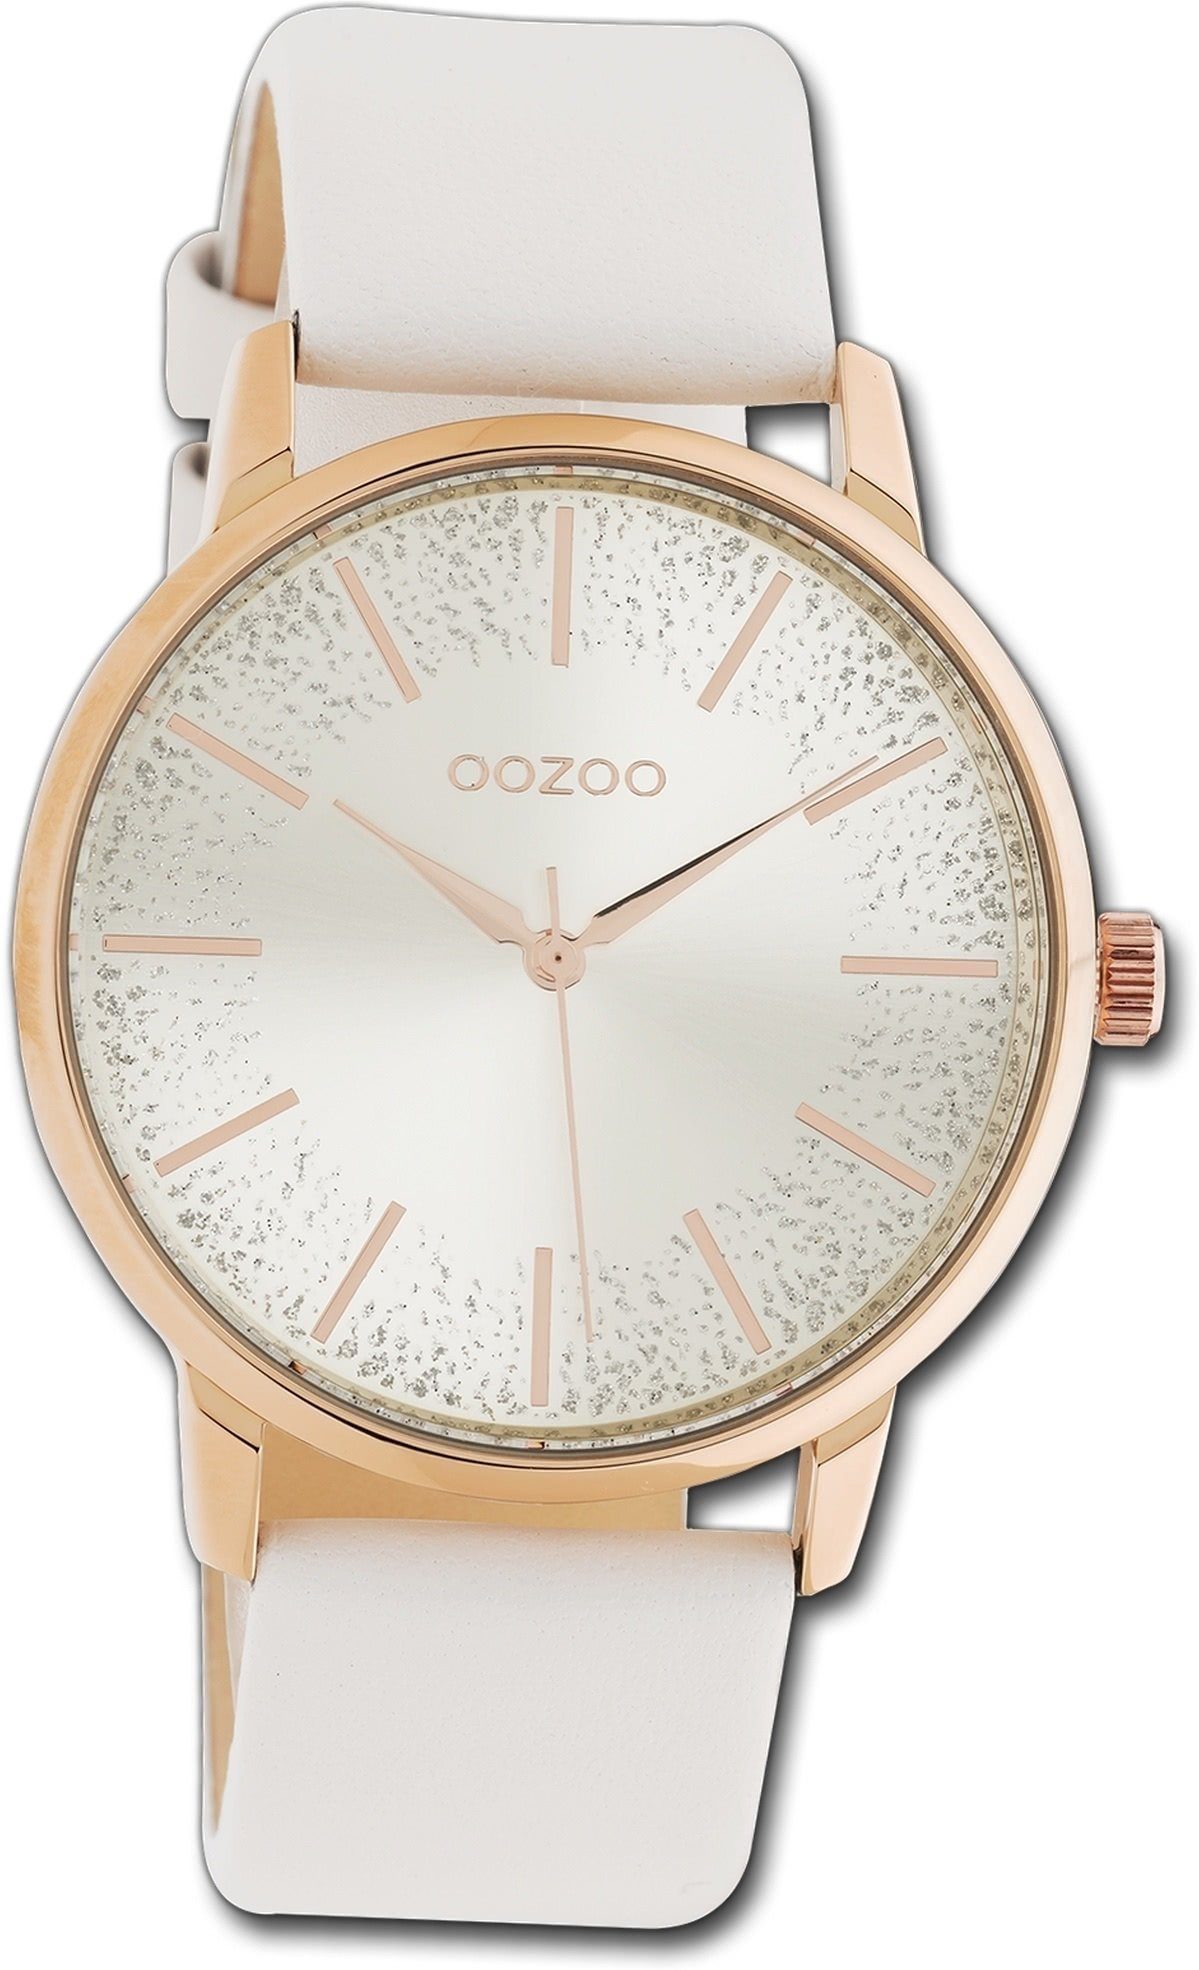 OOZOO Quarzuhr Oozoo Damen Uhr Timepieces C10715, Damenuhr Lederarmband weiß, rundes Gehäuse, mittel (ca. 36mm)